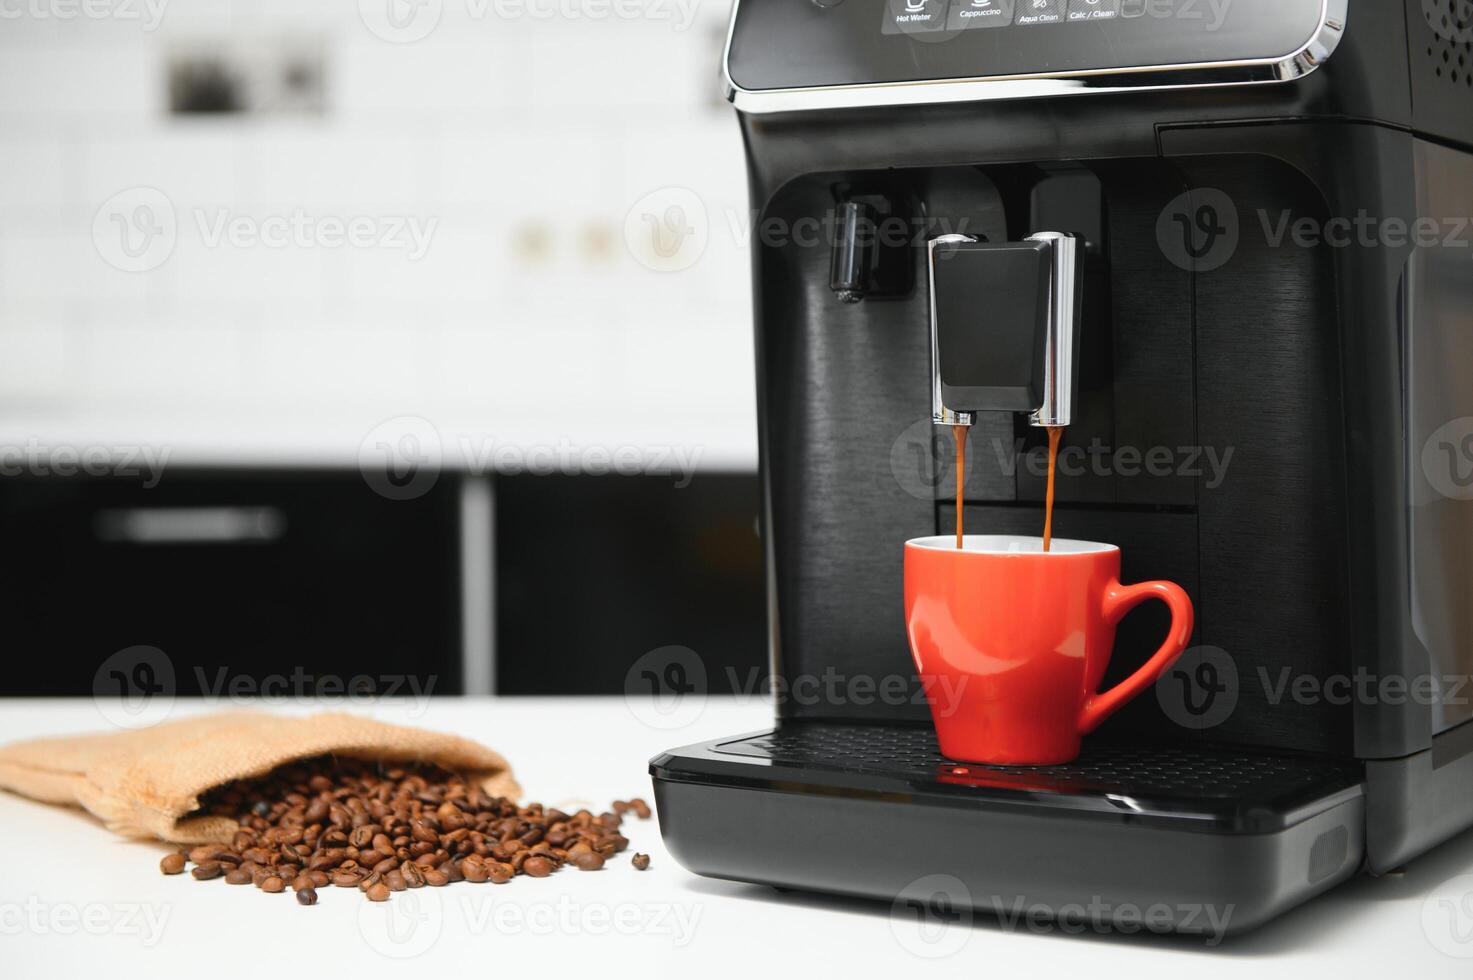 modern espresso kaffe maskin med en kopp i kök foto